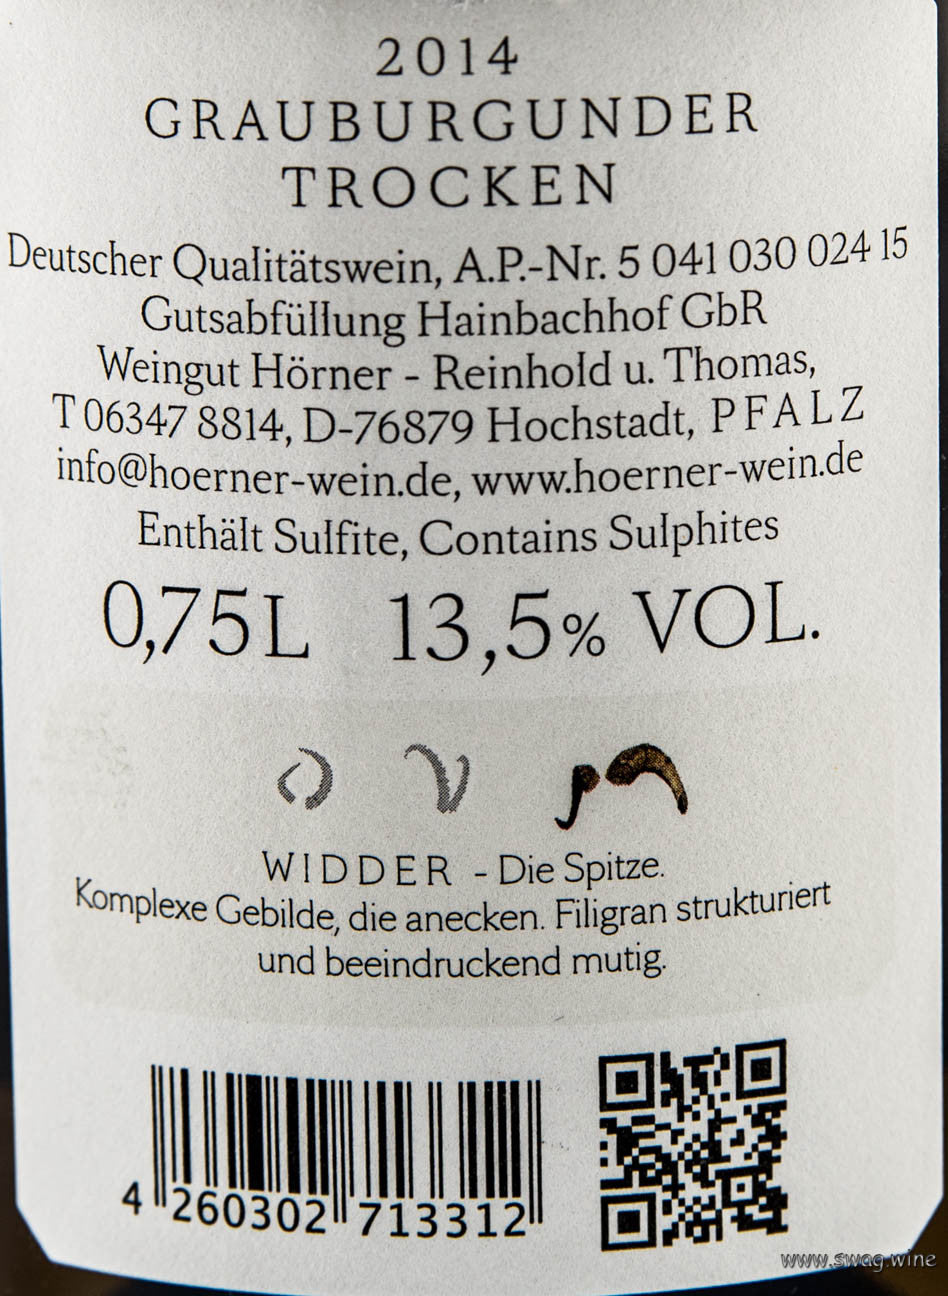 Grauburgunder Widder Thommy Hörner Wein Südpfalz Rueckenetikett